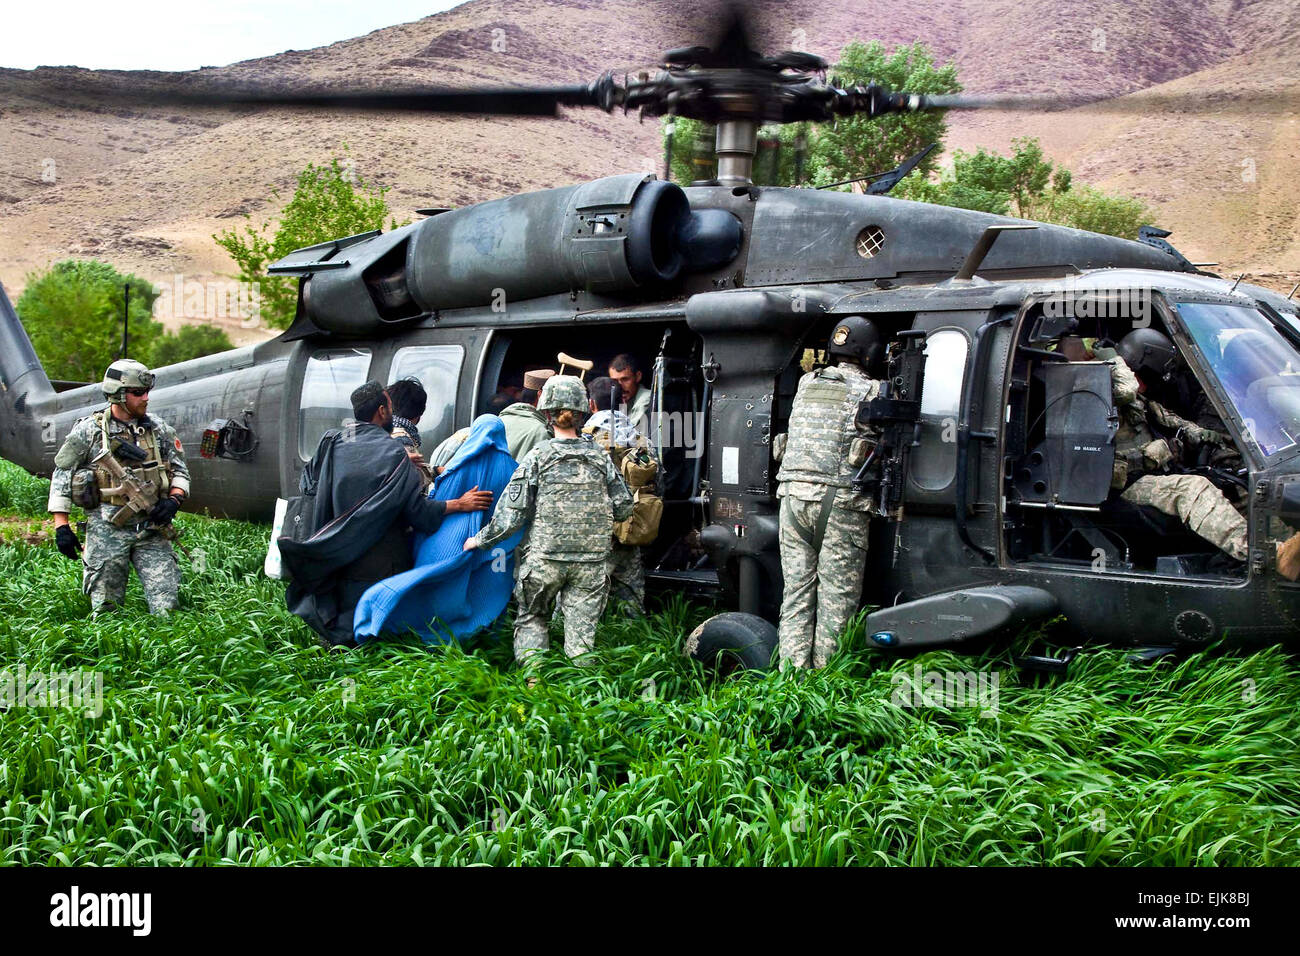 Stati Uniti Soldati feriti aiutano gli abitanti di un villaggio afghano su un UH-60 Black Hawk elicottero durante una operazione per il trasporto dei pazienti in provincia di Uruzgan, Afghanistan, Marzo 28, 2010. Spc. Nicholas T. Loyd Foto Stock